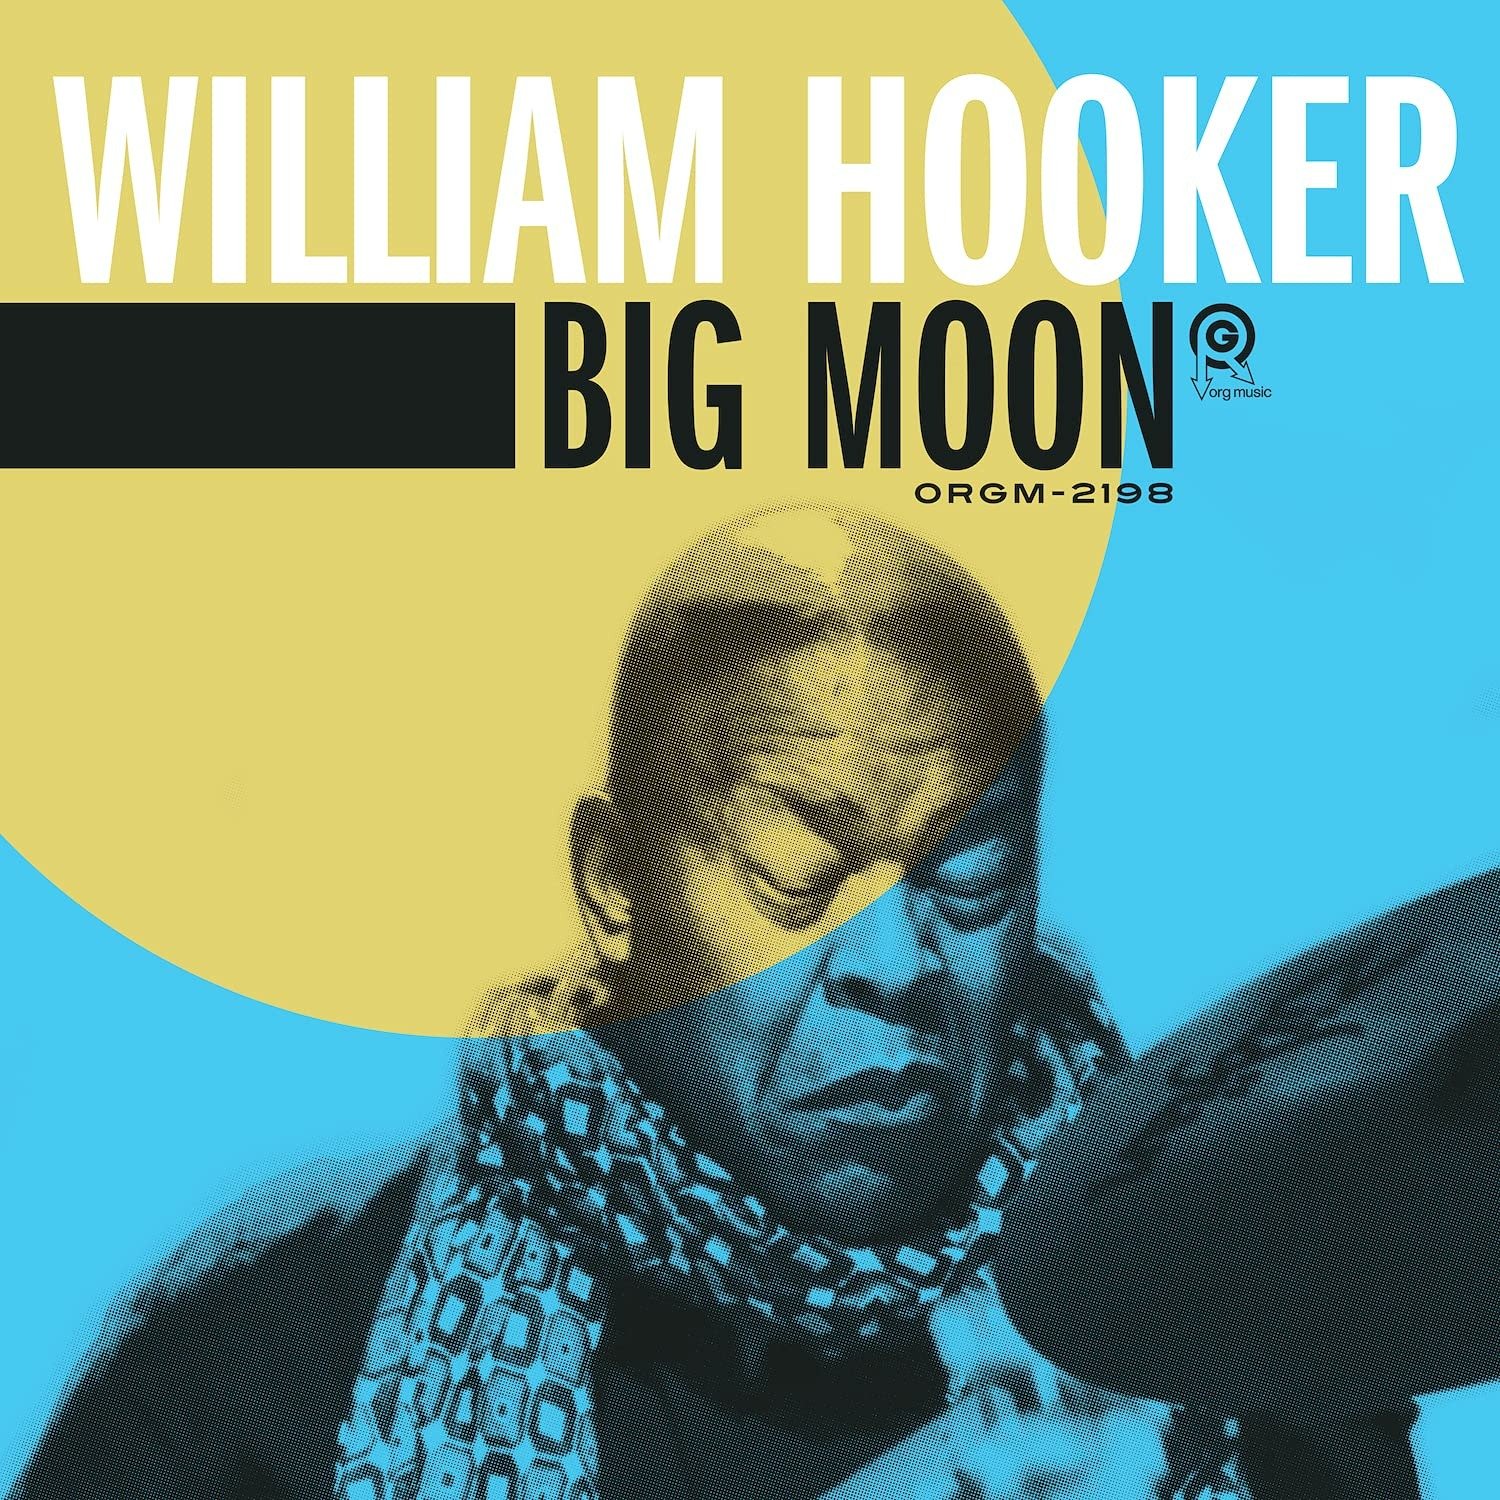 CD Shop - HOOKER, WILLIAM BIG MOON